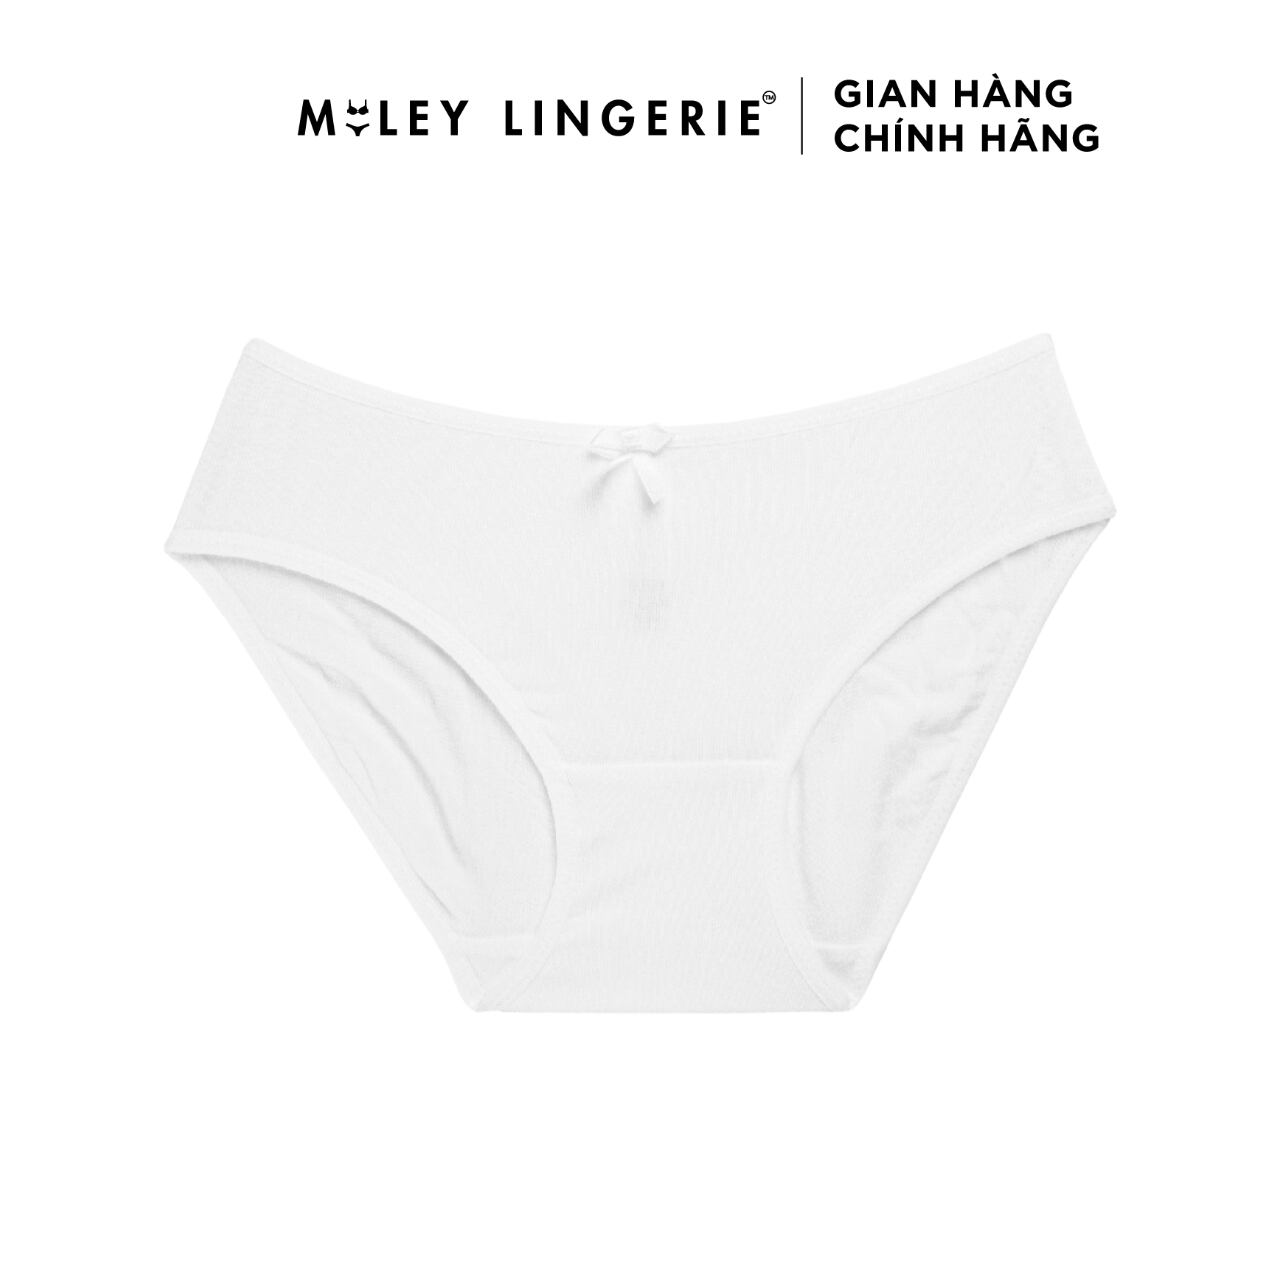 Hình ảnh Combo 5 Quần Lót Nữ Modern Brief Miley Lingerie BC041 - Màu Ngẫu Nhiên